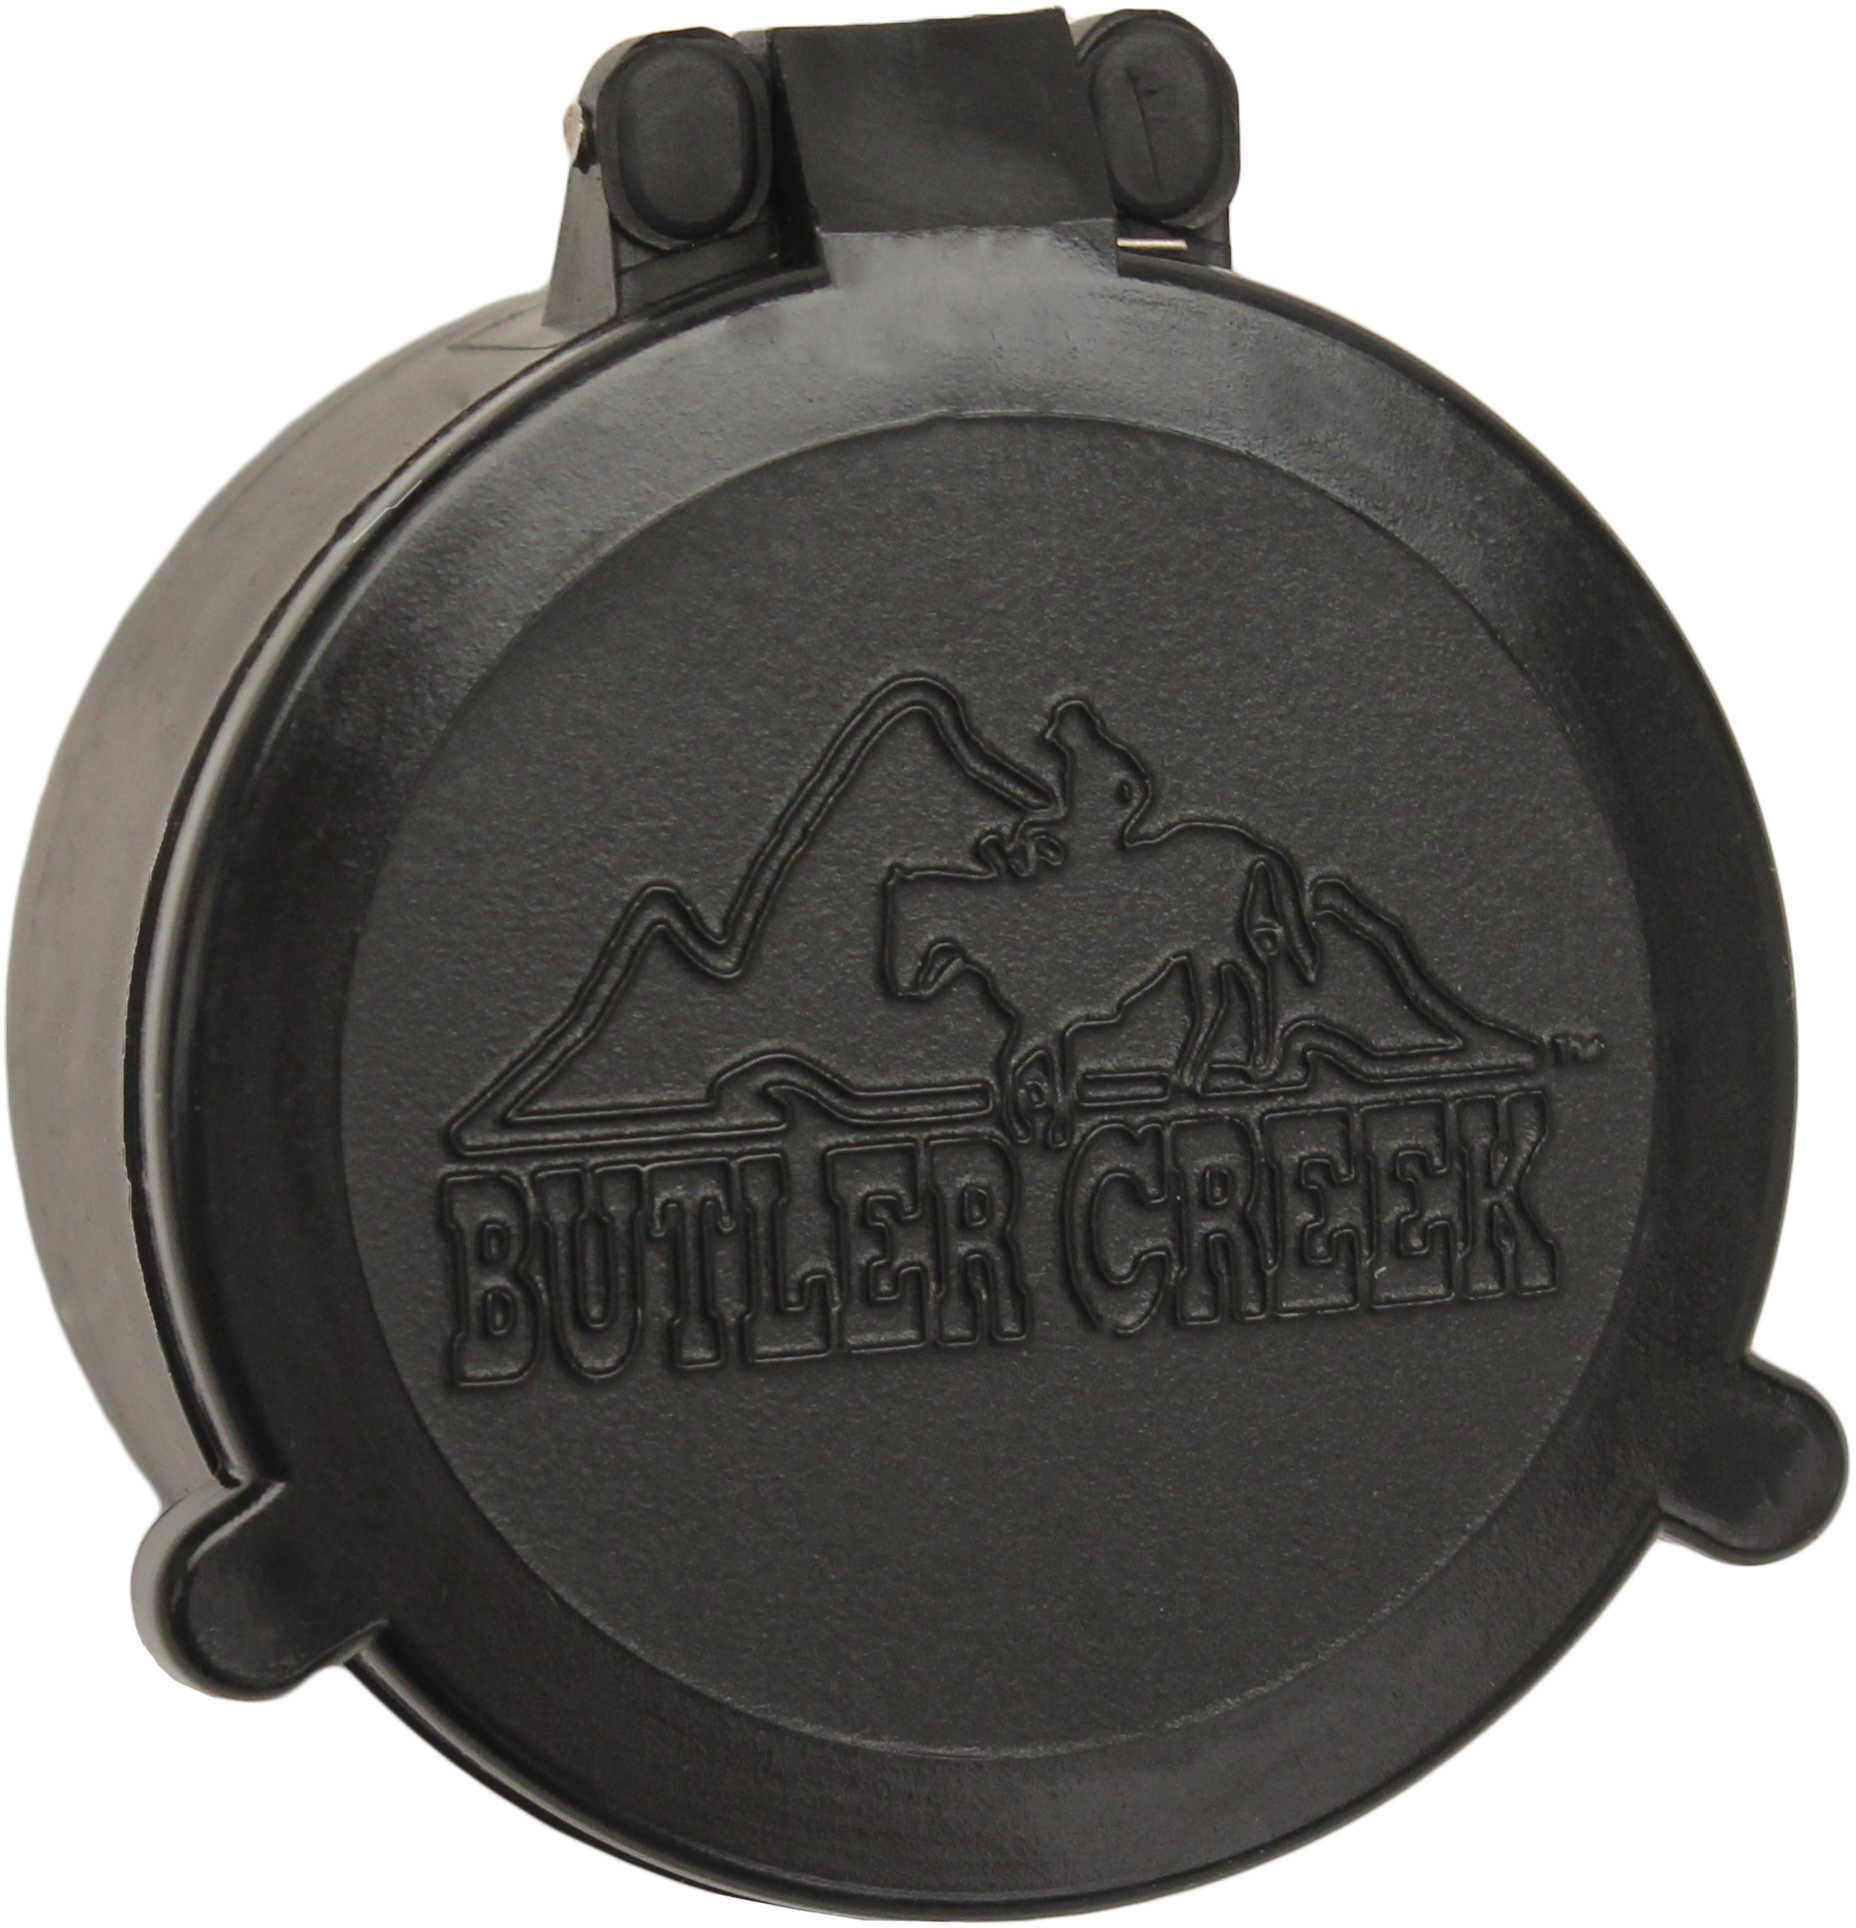 Butler Creek 30270 Flip-Open Scope Cover Objective Lens 46.70mm Slip On Polymer Black